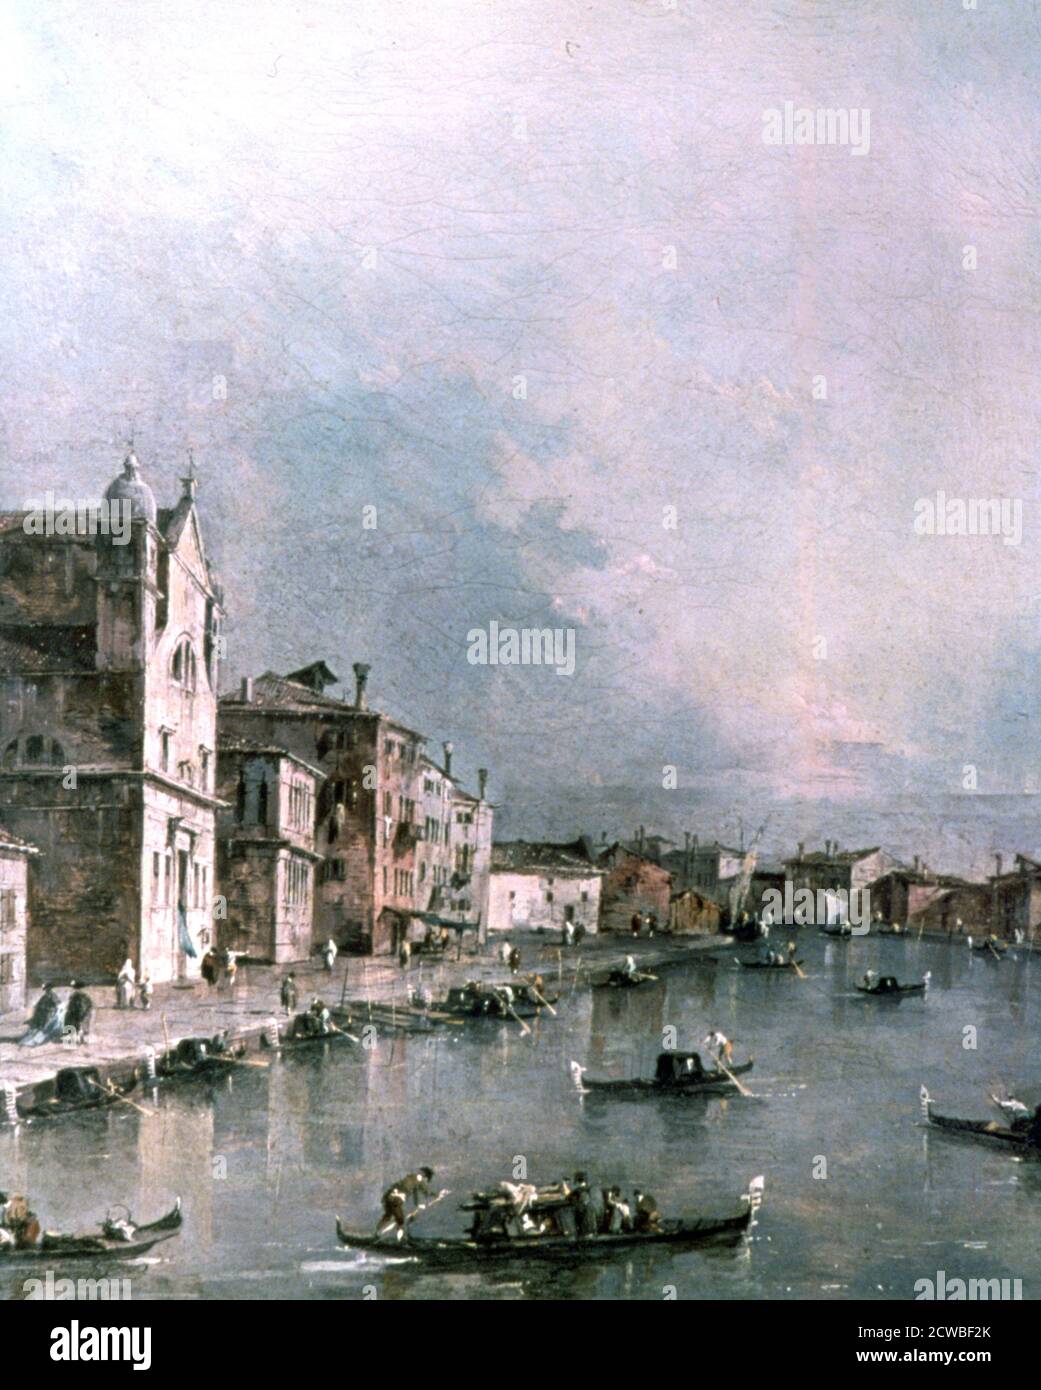 El Gran Canal, Venecia', c1732-1790. Artista: Francesco Guardi. Francesco Guardi (1712-1793) fue un pintor italiano, noble y miembro de la Escuela veneciana. Foto de stock